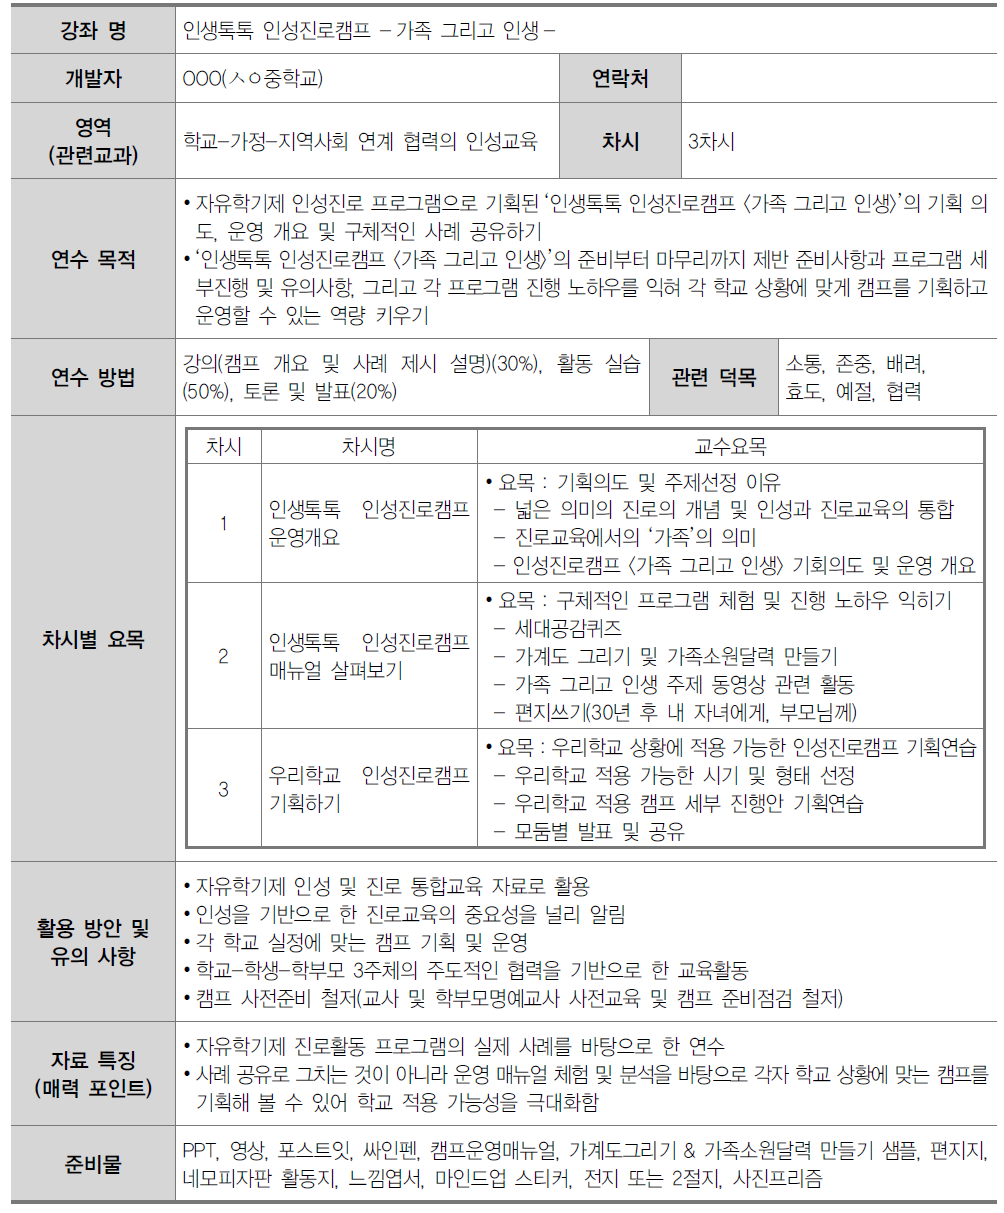 중학교 교원 인성교육 연수자료(6영역)-6-2. 인생톡톡 인성진로캠프